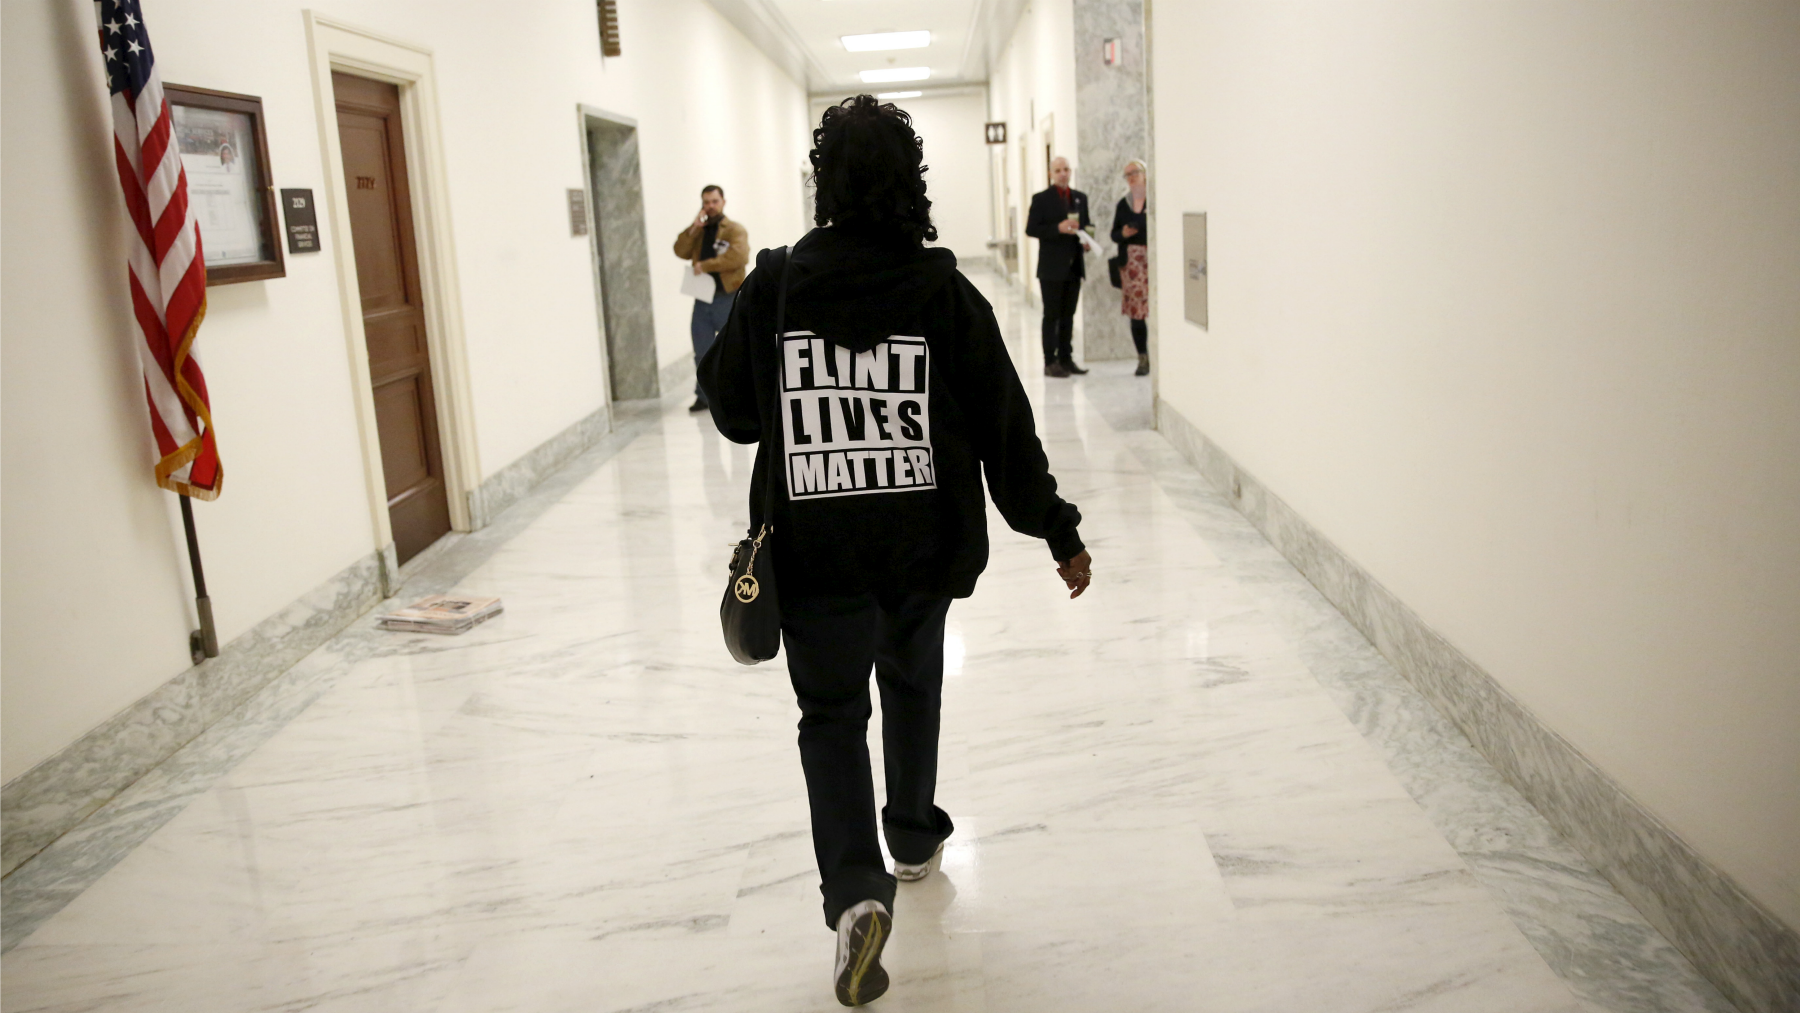 Flint Lives Matter T-shirt wearer